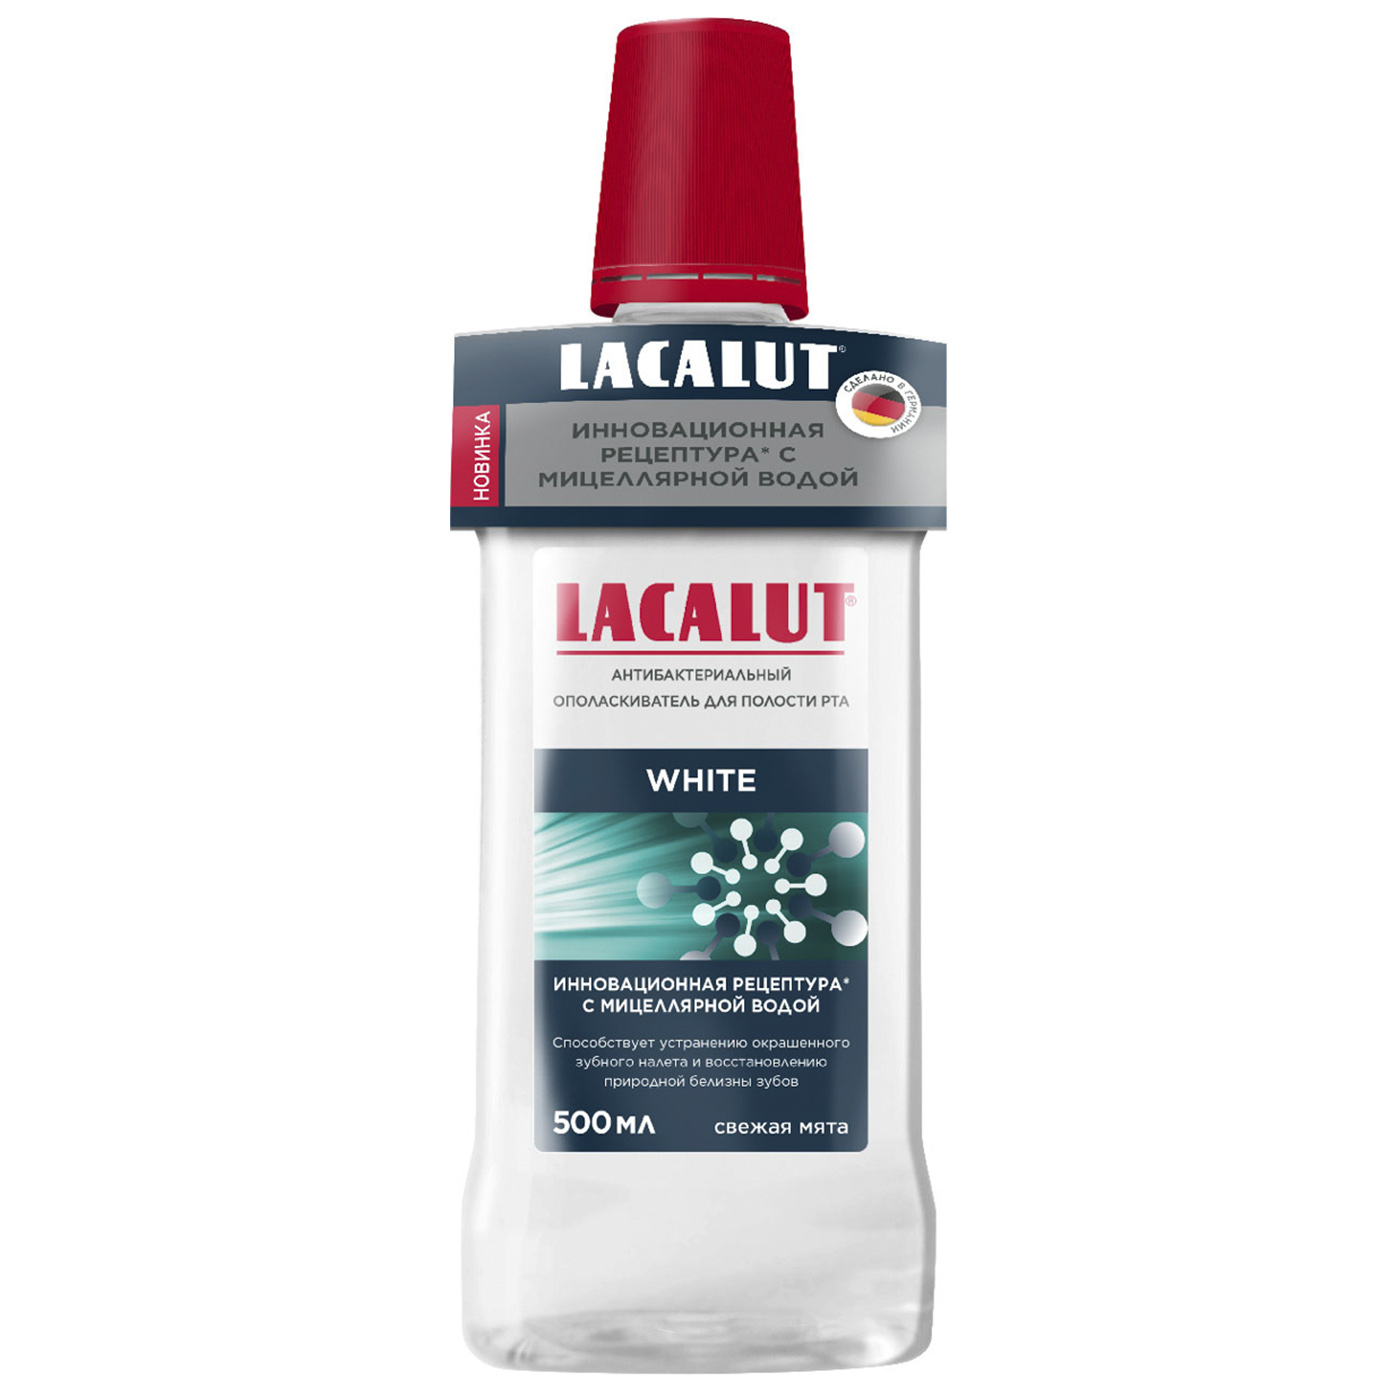 Lacalut White антибактериальный ополаскиватель для полости р